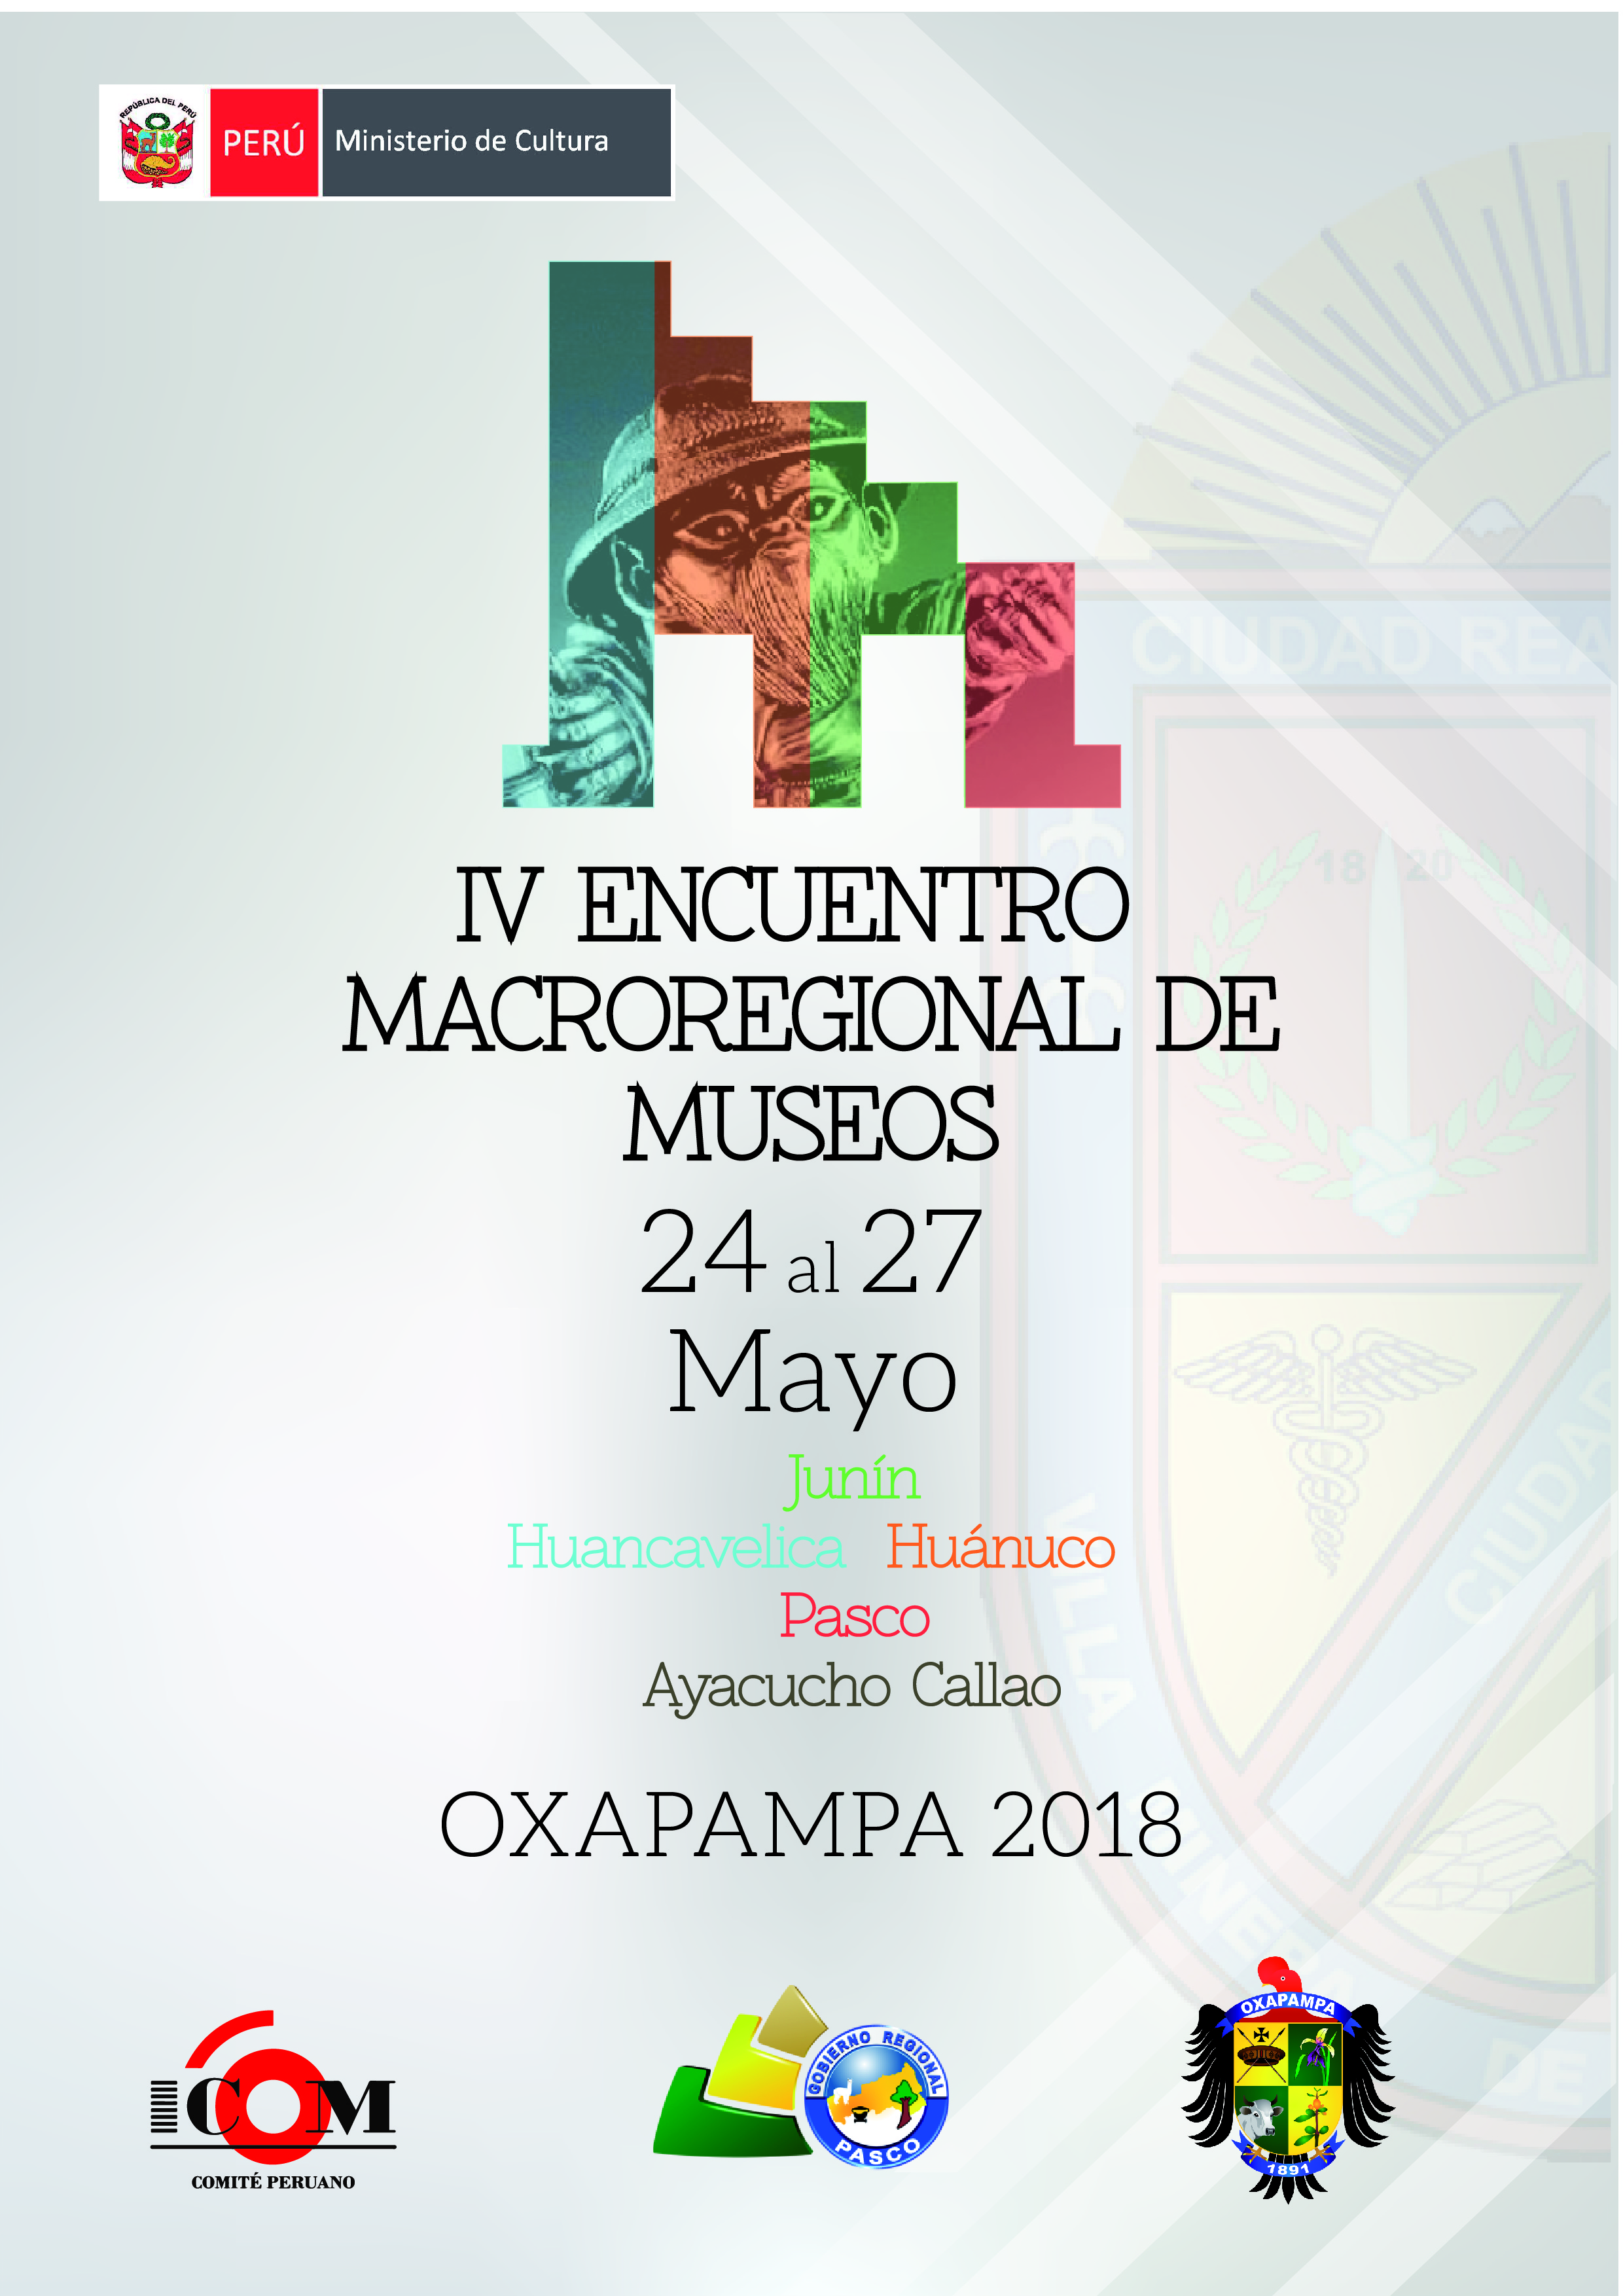 IV Encuentro Macrorregional de Museos Oxapampa 2018